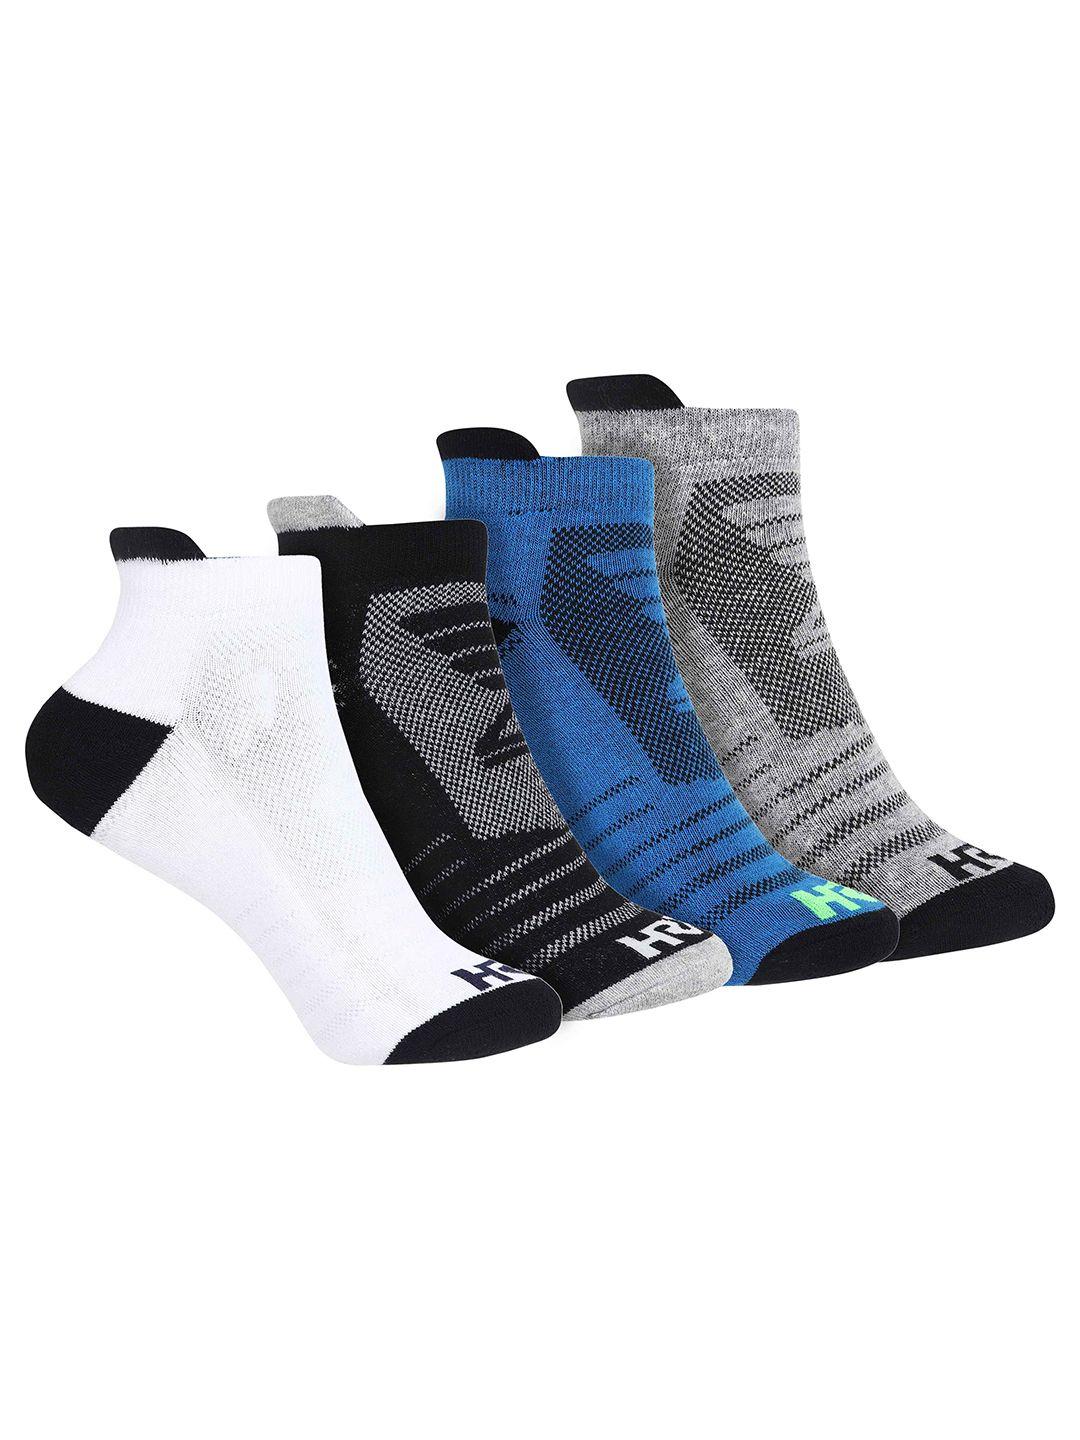 hrx by hrithik roshan unisex pack of 4 patterned ankle -length socks